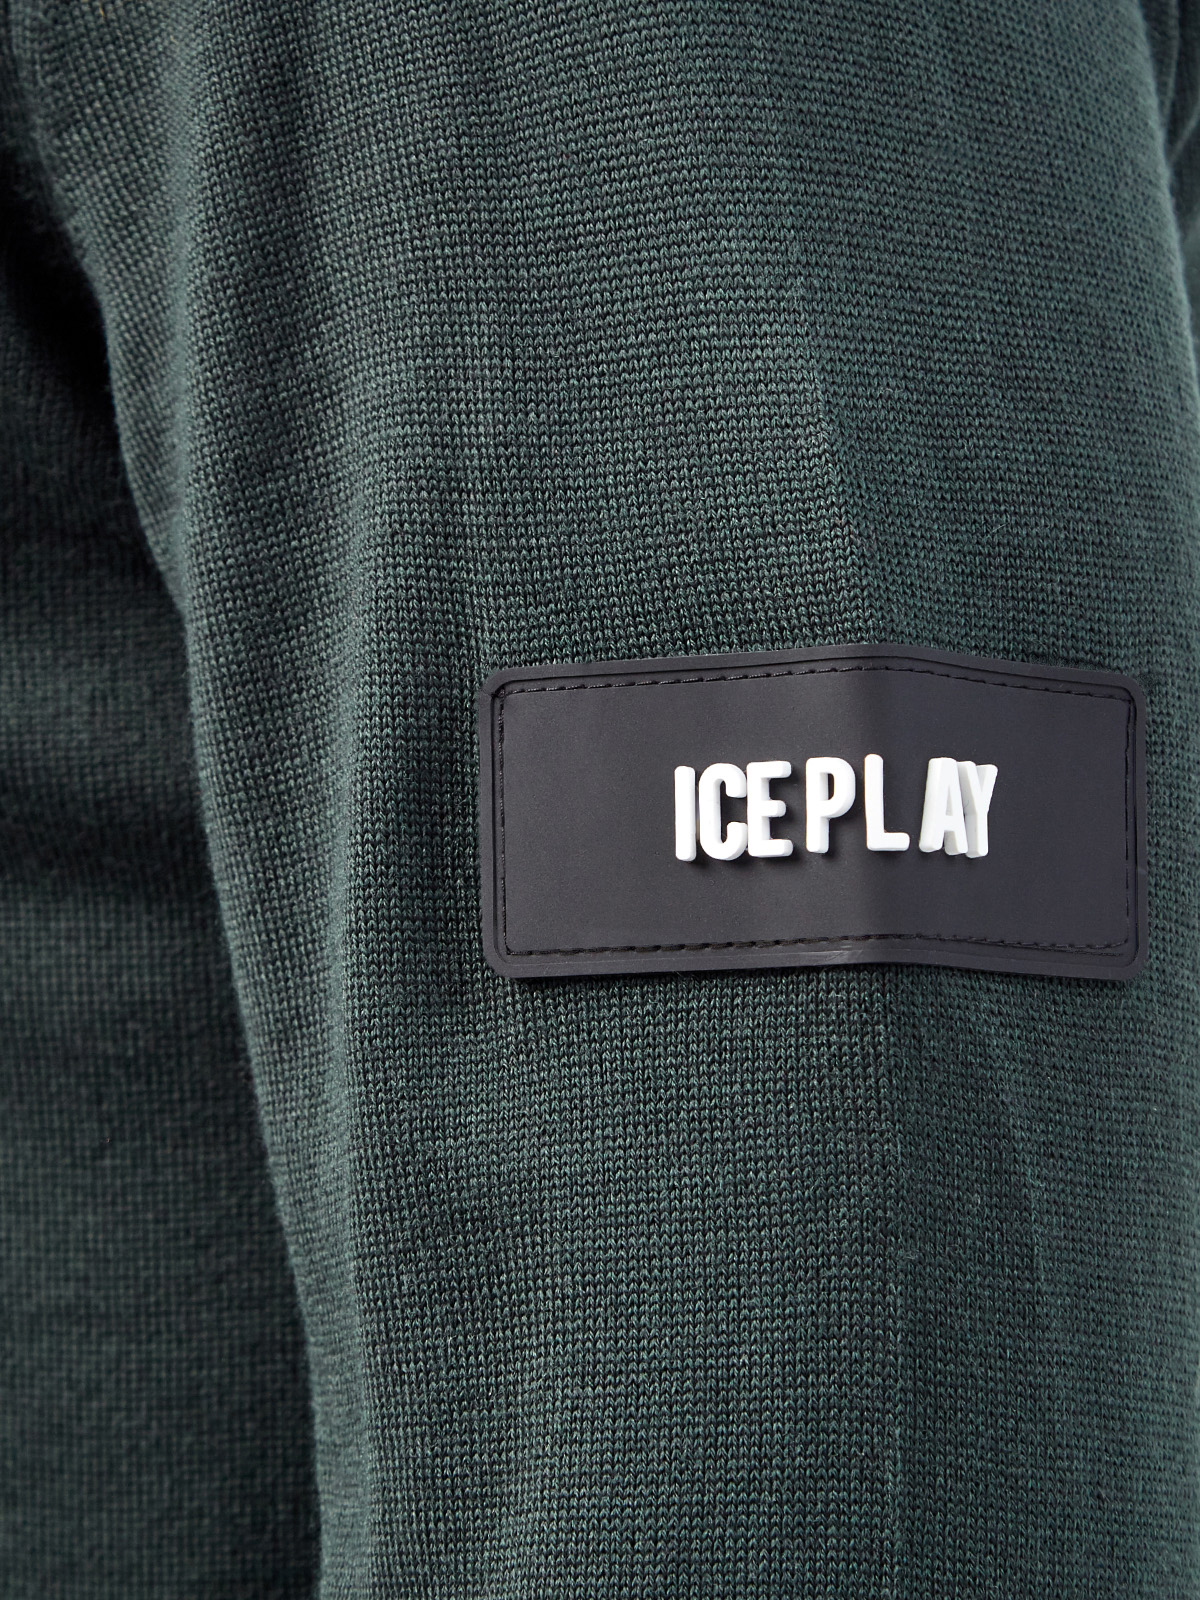 Однотонный джемпер из пряжи с объемным логотипом ICE PLAY, цвет зеленый, размер M;L;XL - фото 5